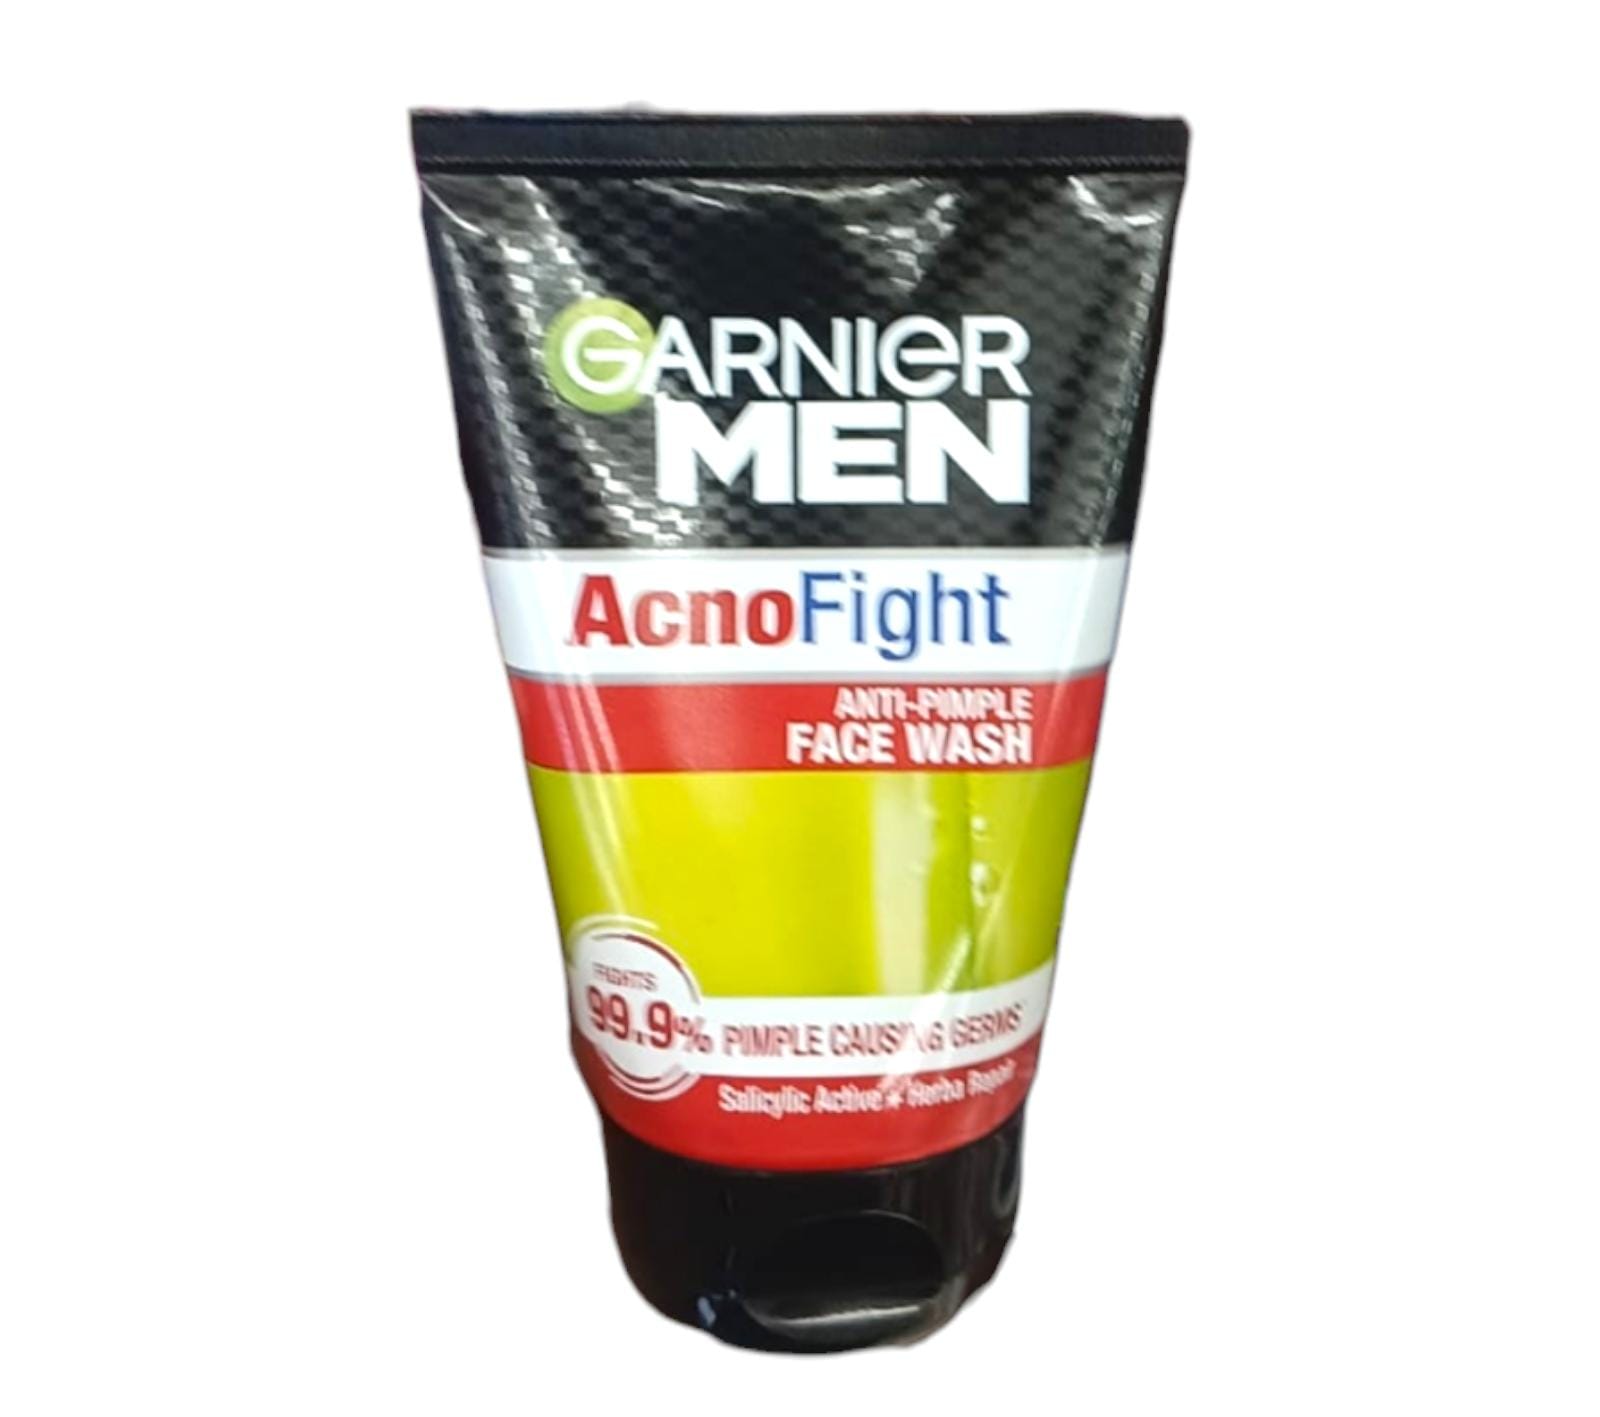 Garnier Men Acno fight face wash